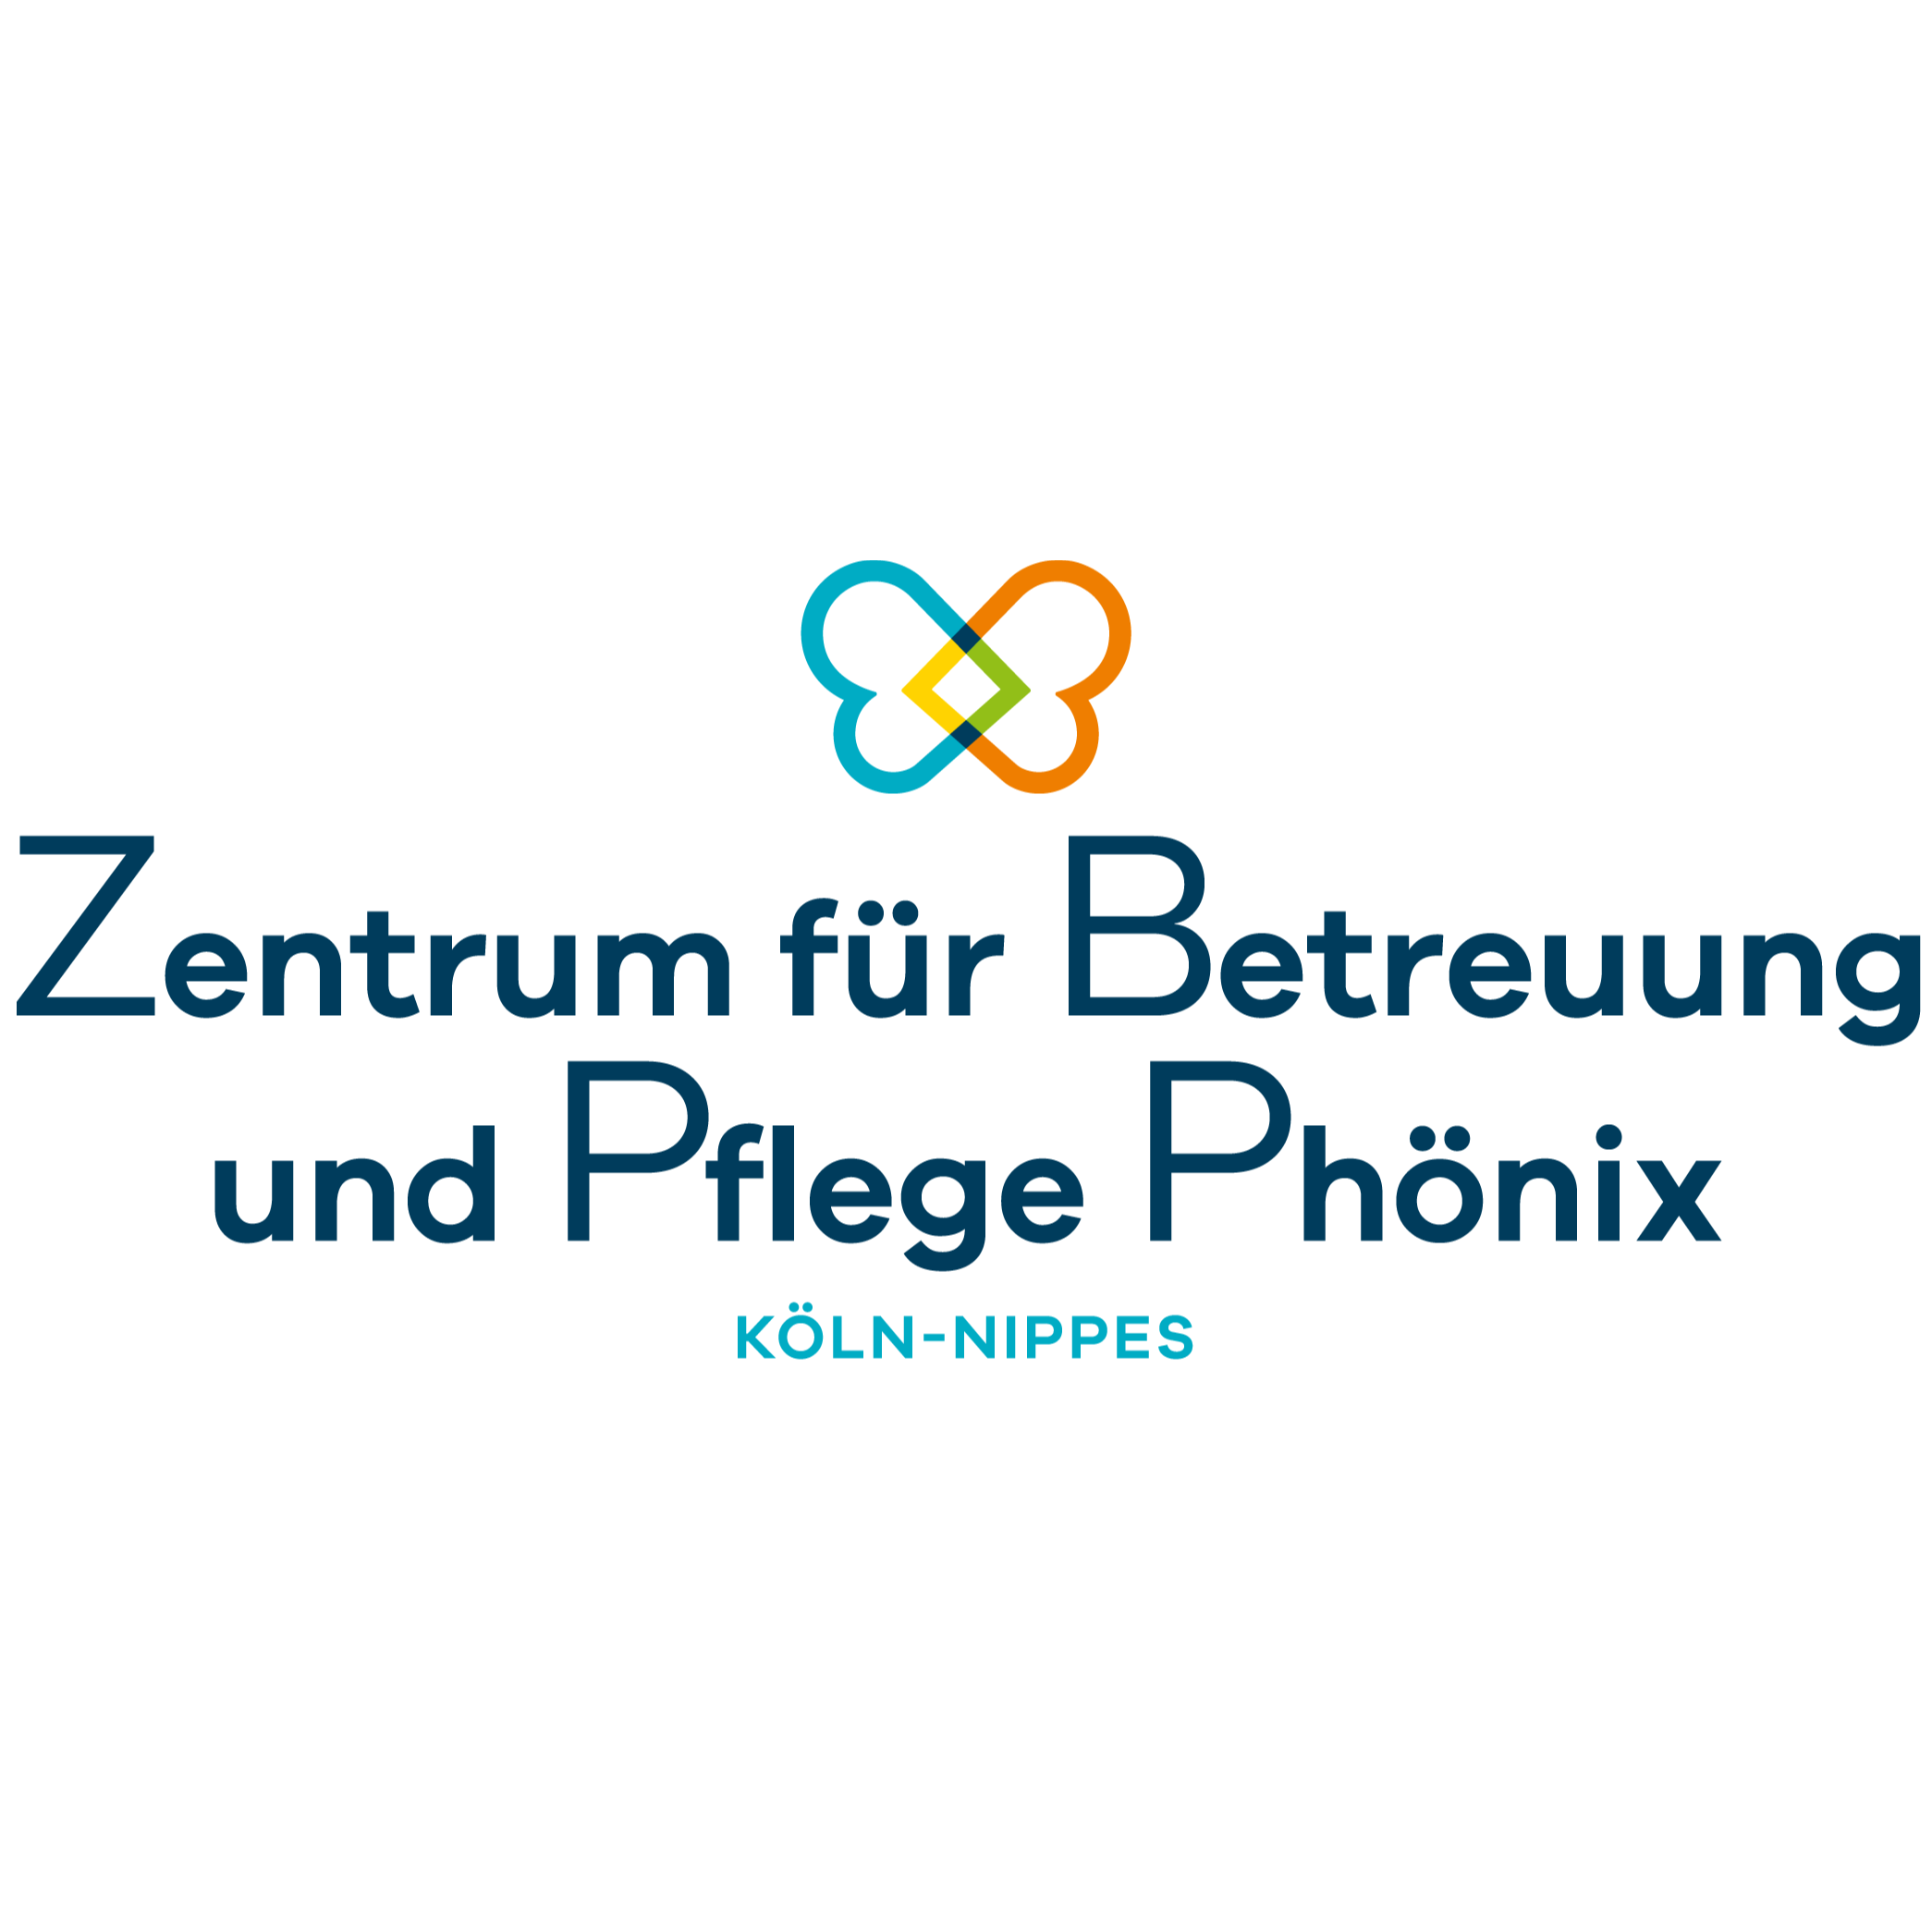 Zentrum für Betreuung und Pflege Phönix Köln-Nippes  